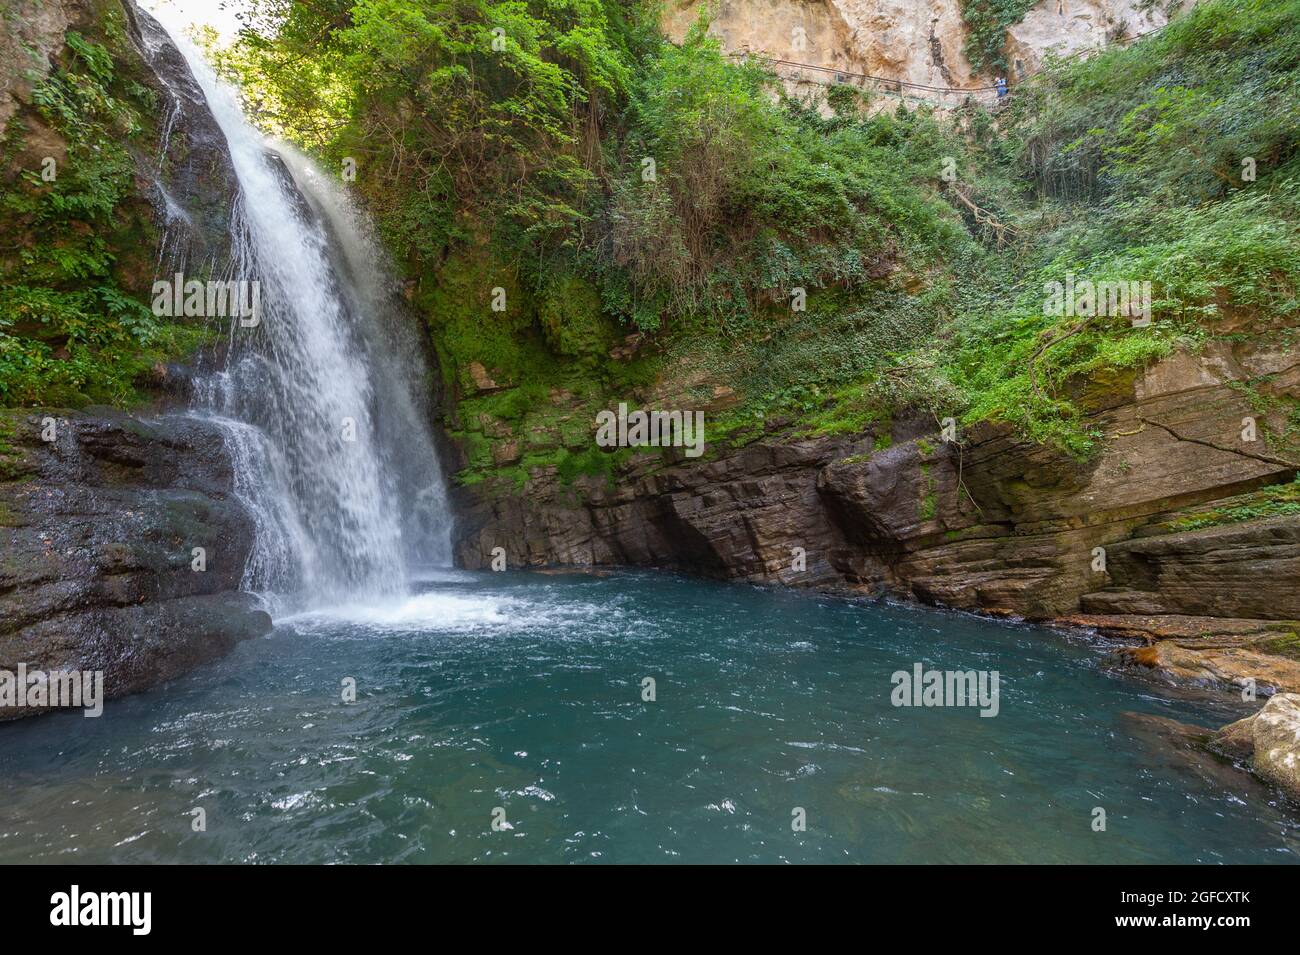 La cascata Schioppo nei pressi di Carpinone (Isernia) in Molise Foto Stock